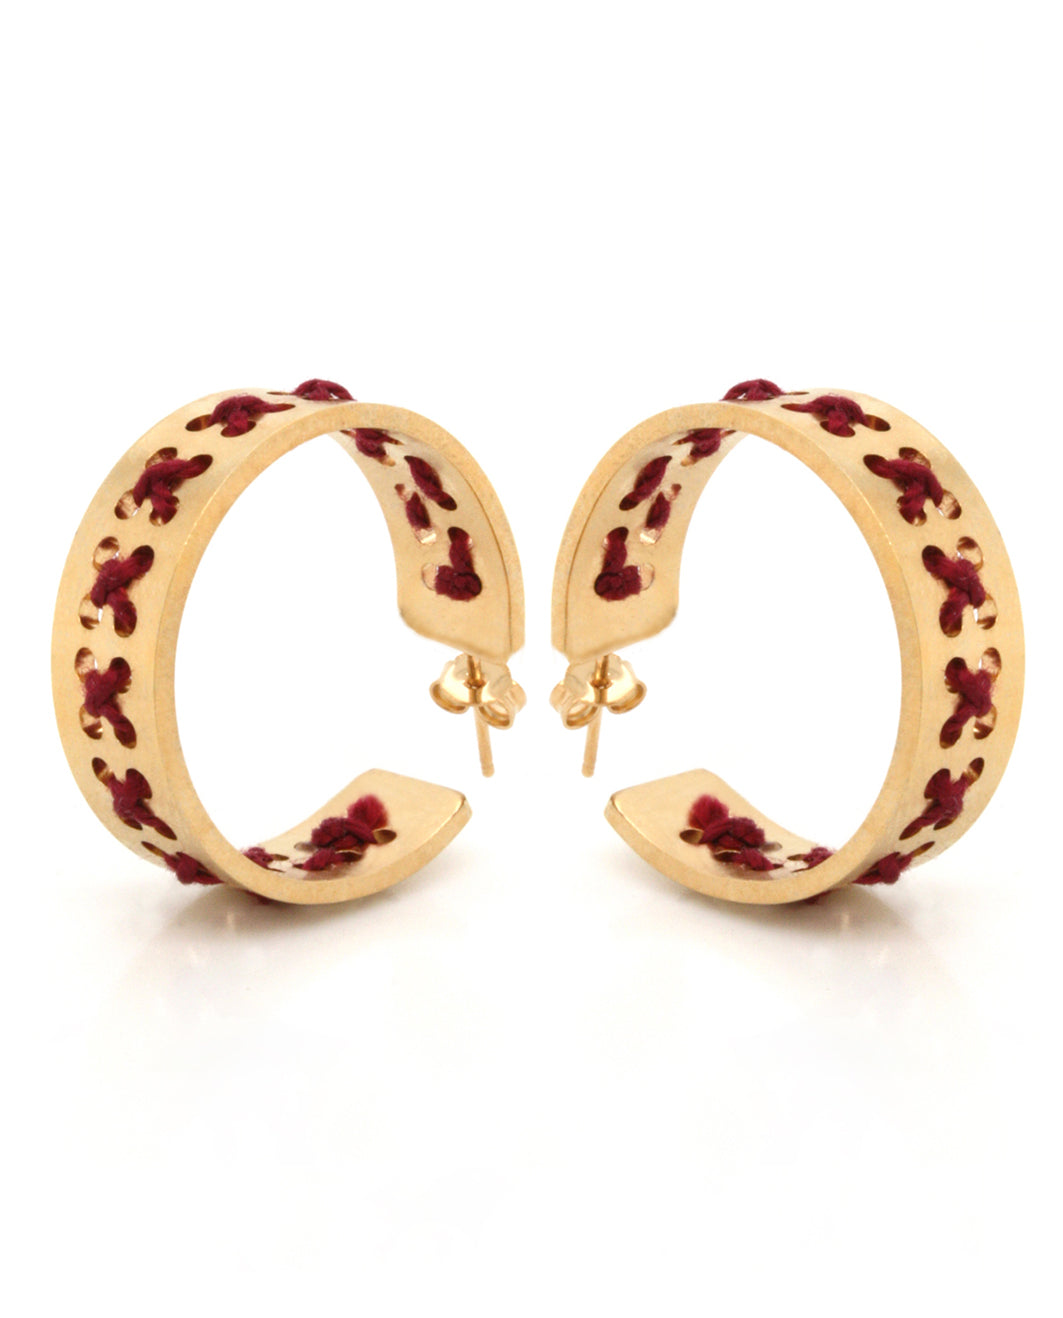 Stavrovelonia earrings